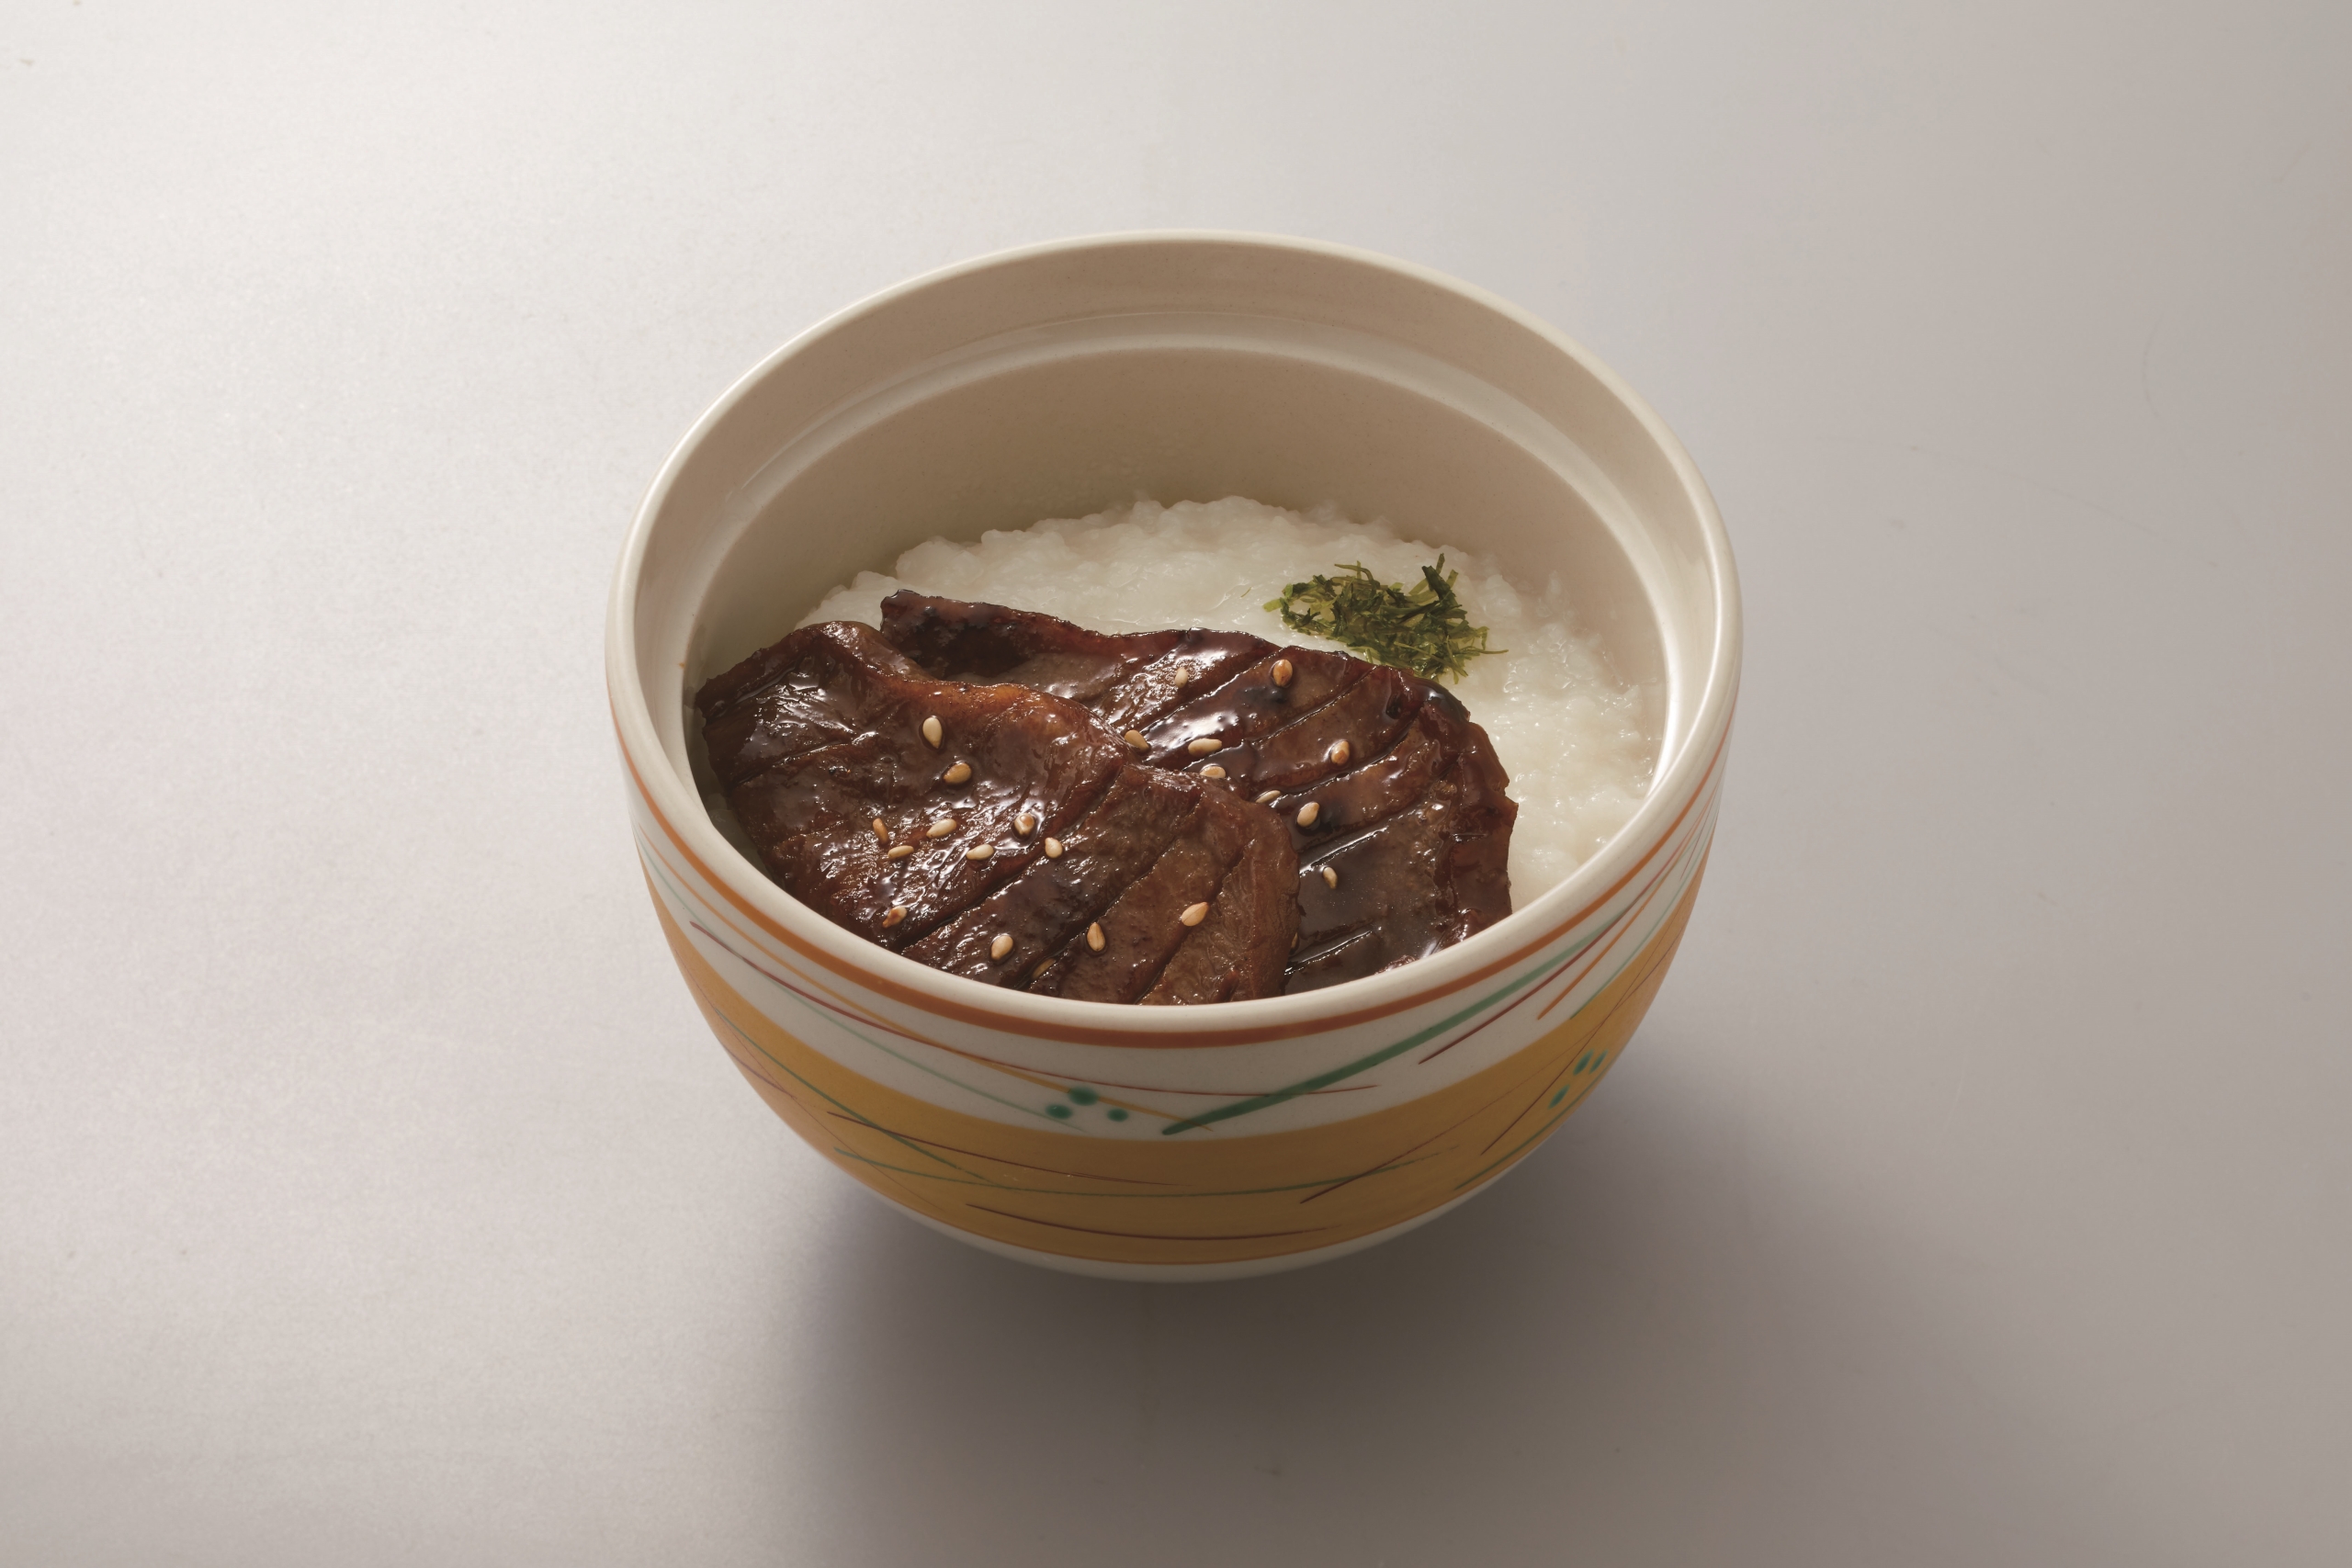 和食さと「ミニ牛タンとろろ丼」/牛タン食べ放題コース